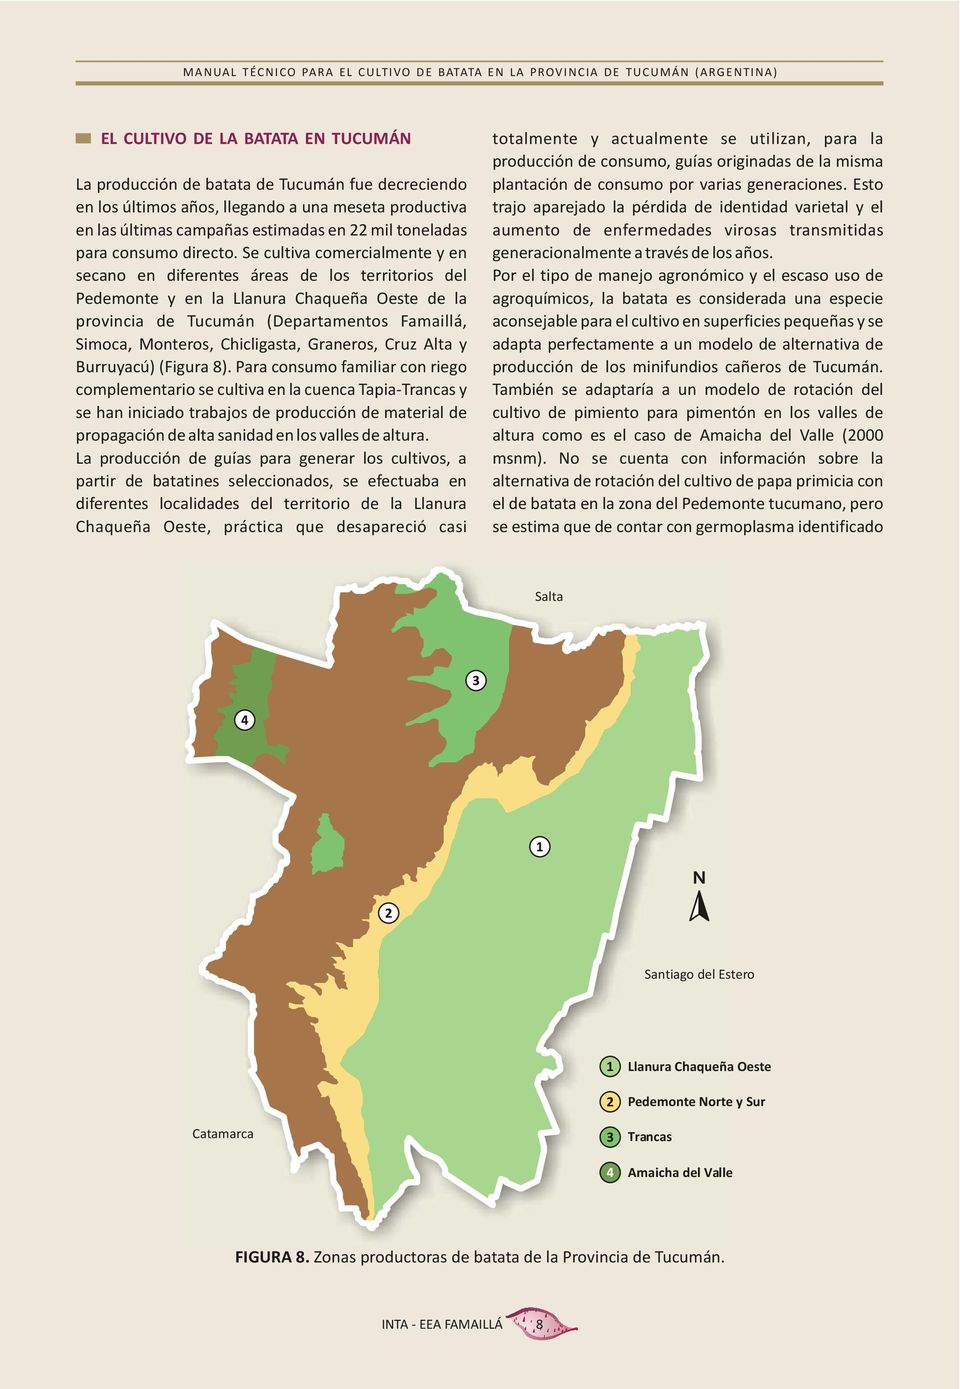 Se cultiva comercialmente y en secano en diferentes áreas de los territorios del Pedemonte y en la Llanura Chaqueña Oeste de la provincia de Tucumán (Departamentos Famaillá, Simoca, Monteros,